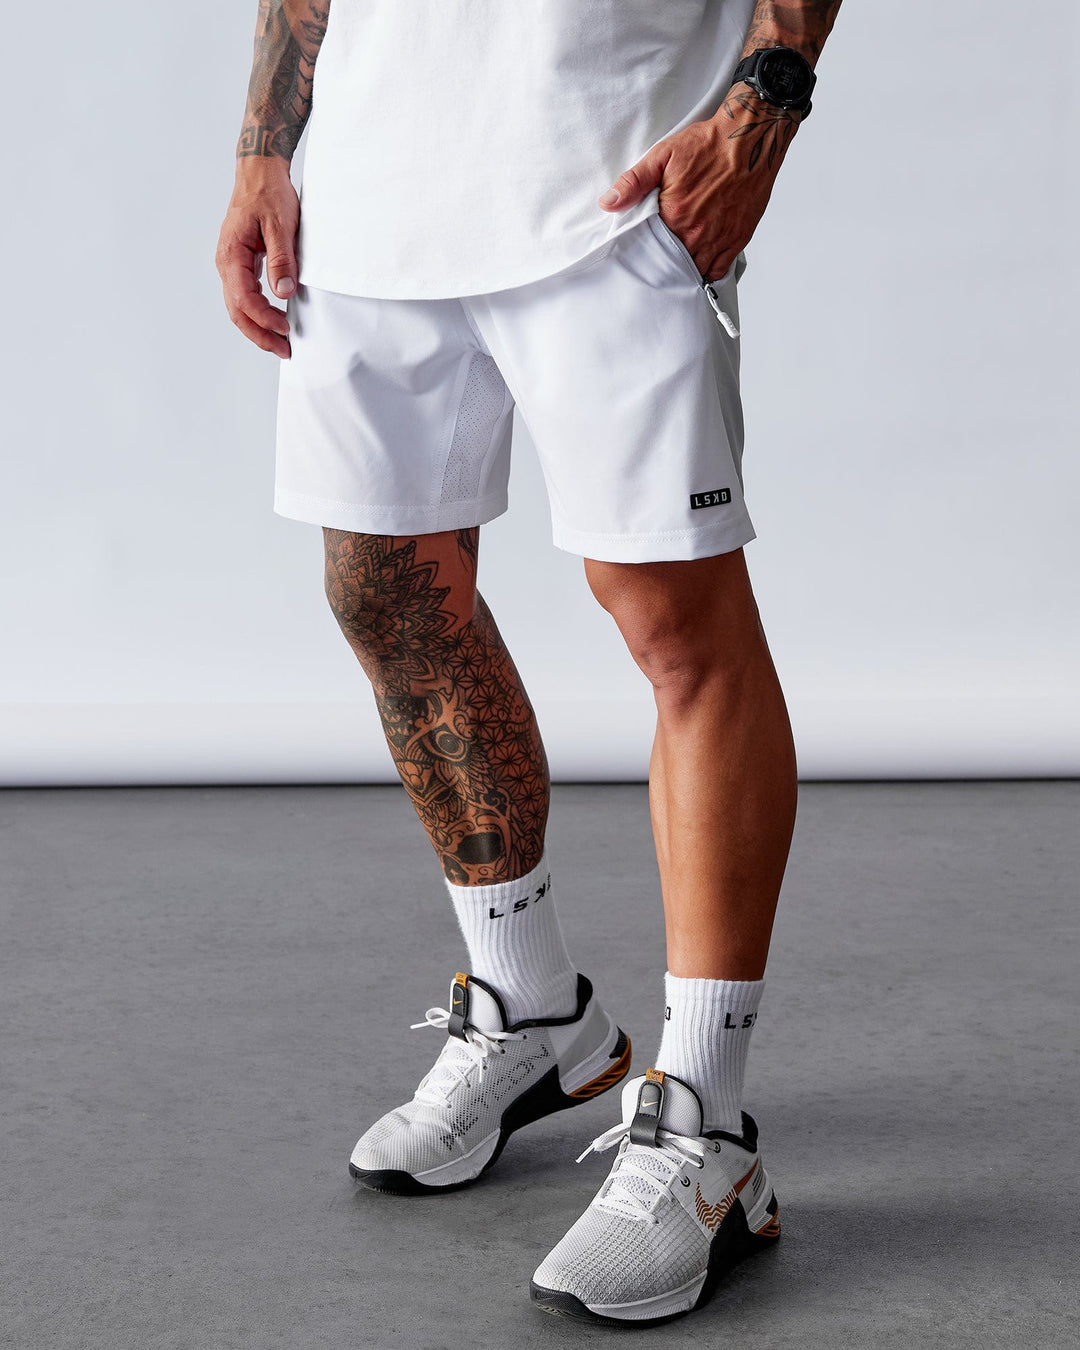 Man wearing Rep 7" Performance Short - White